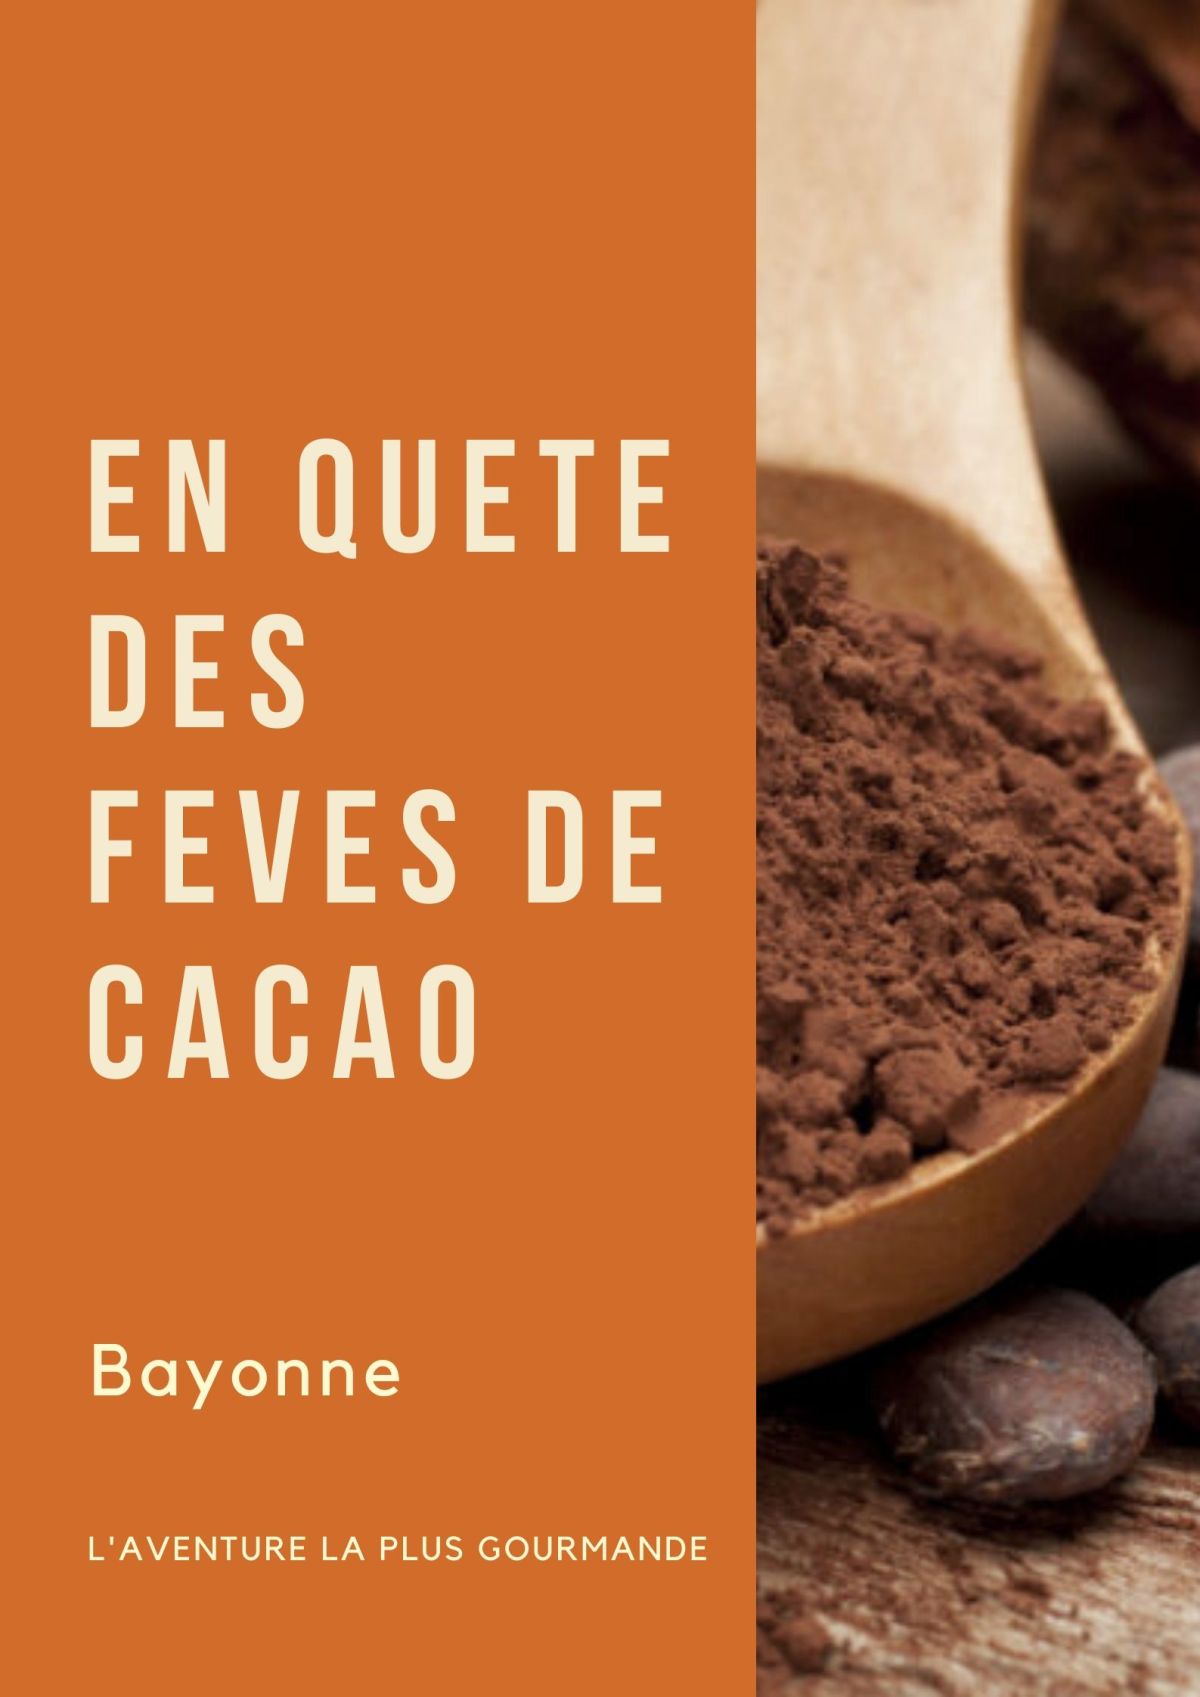 En quête des fèves de cacao à Bayonne